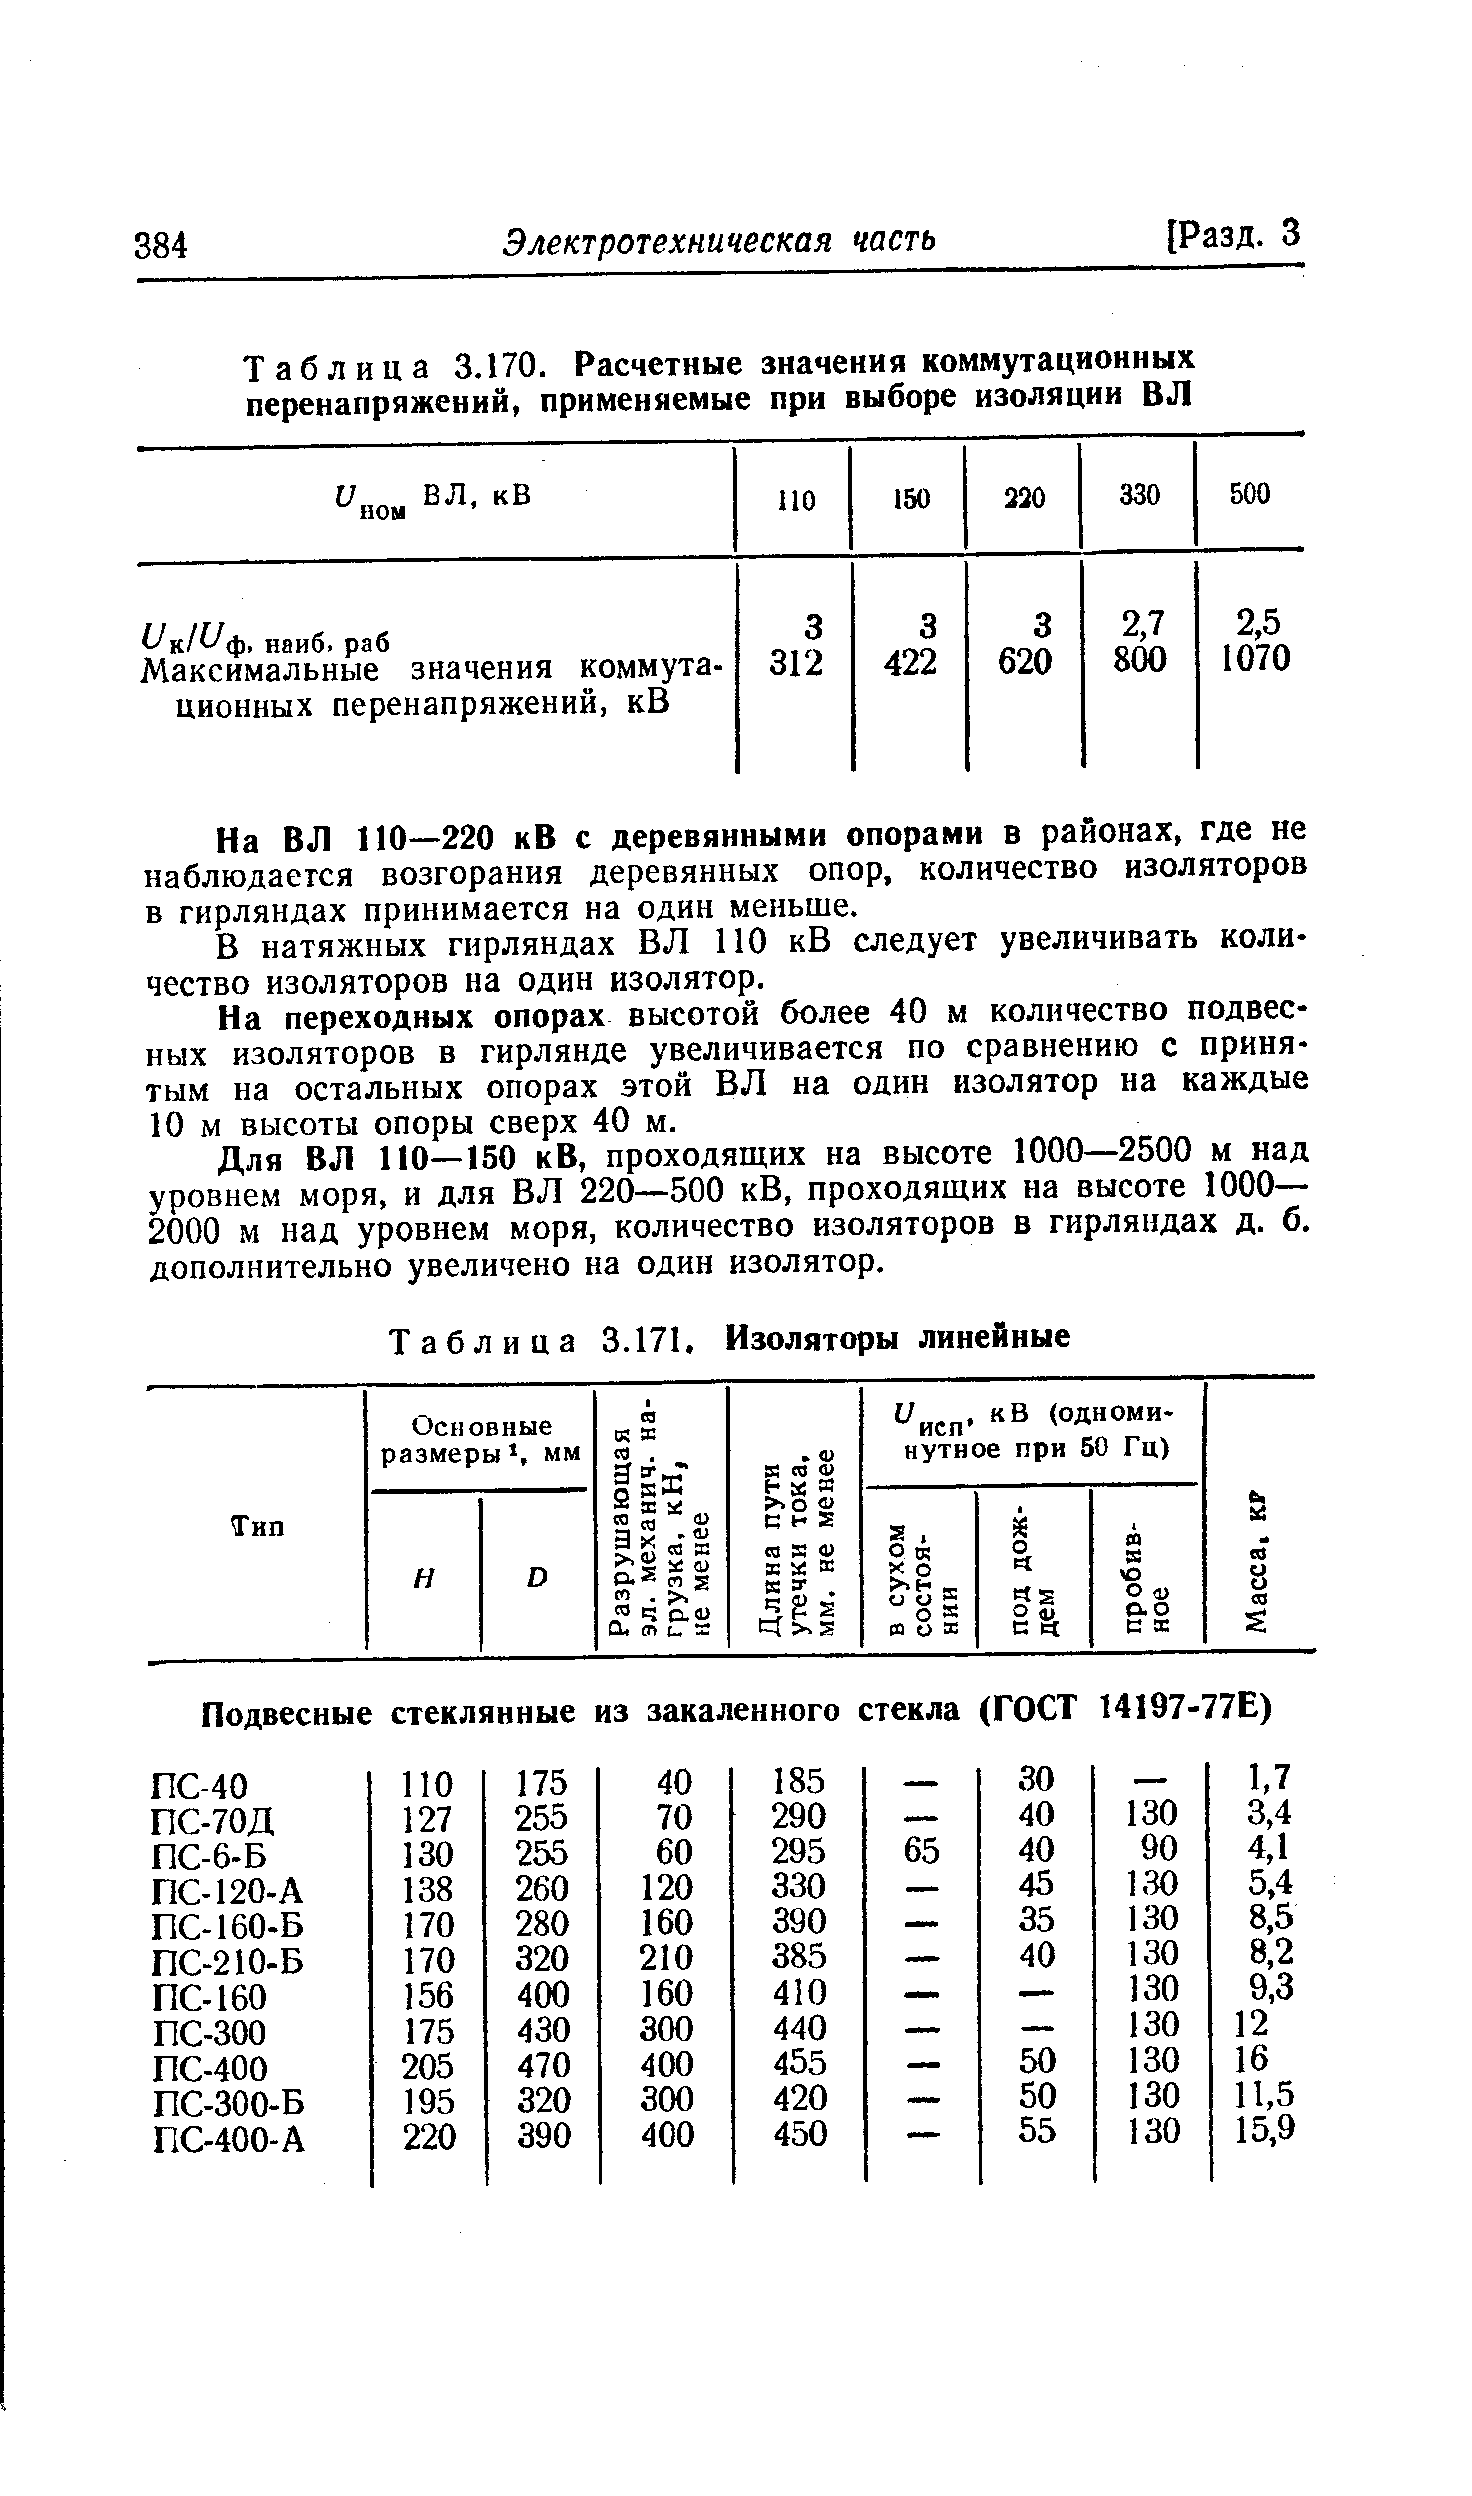 Таблица 3.170. Расчетные значения коммутационных перенапряжений, применяемые при выборе изоляции ВЛ
